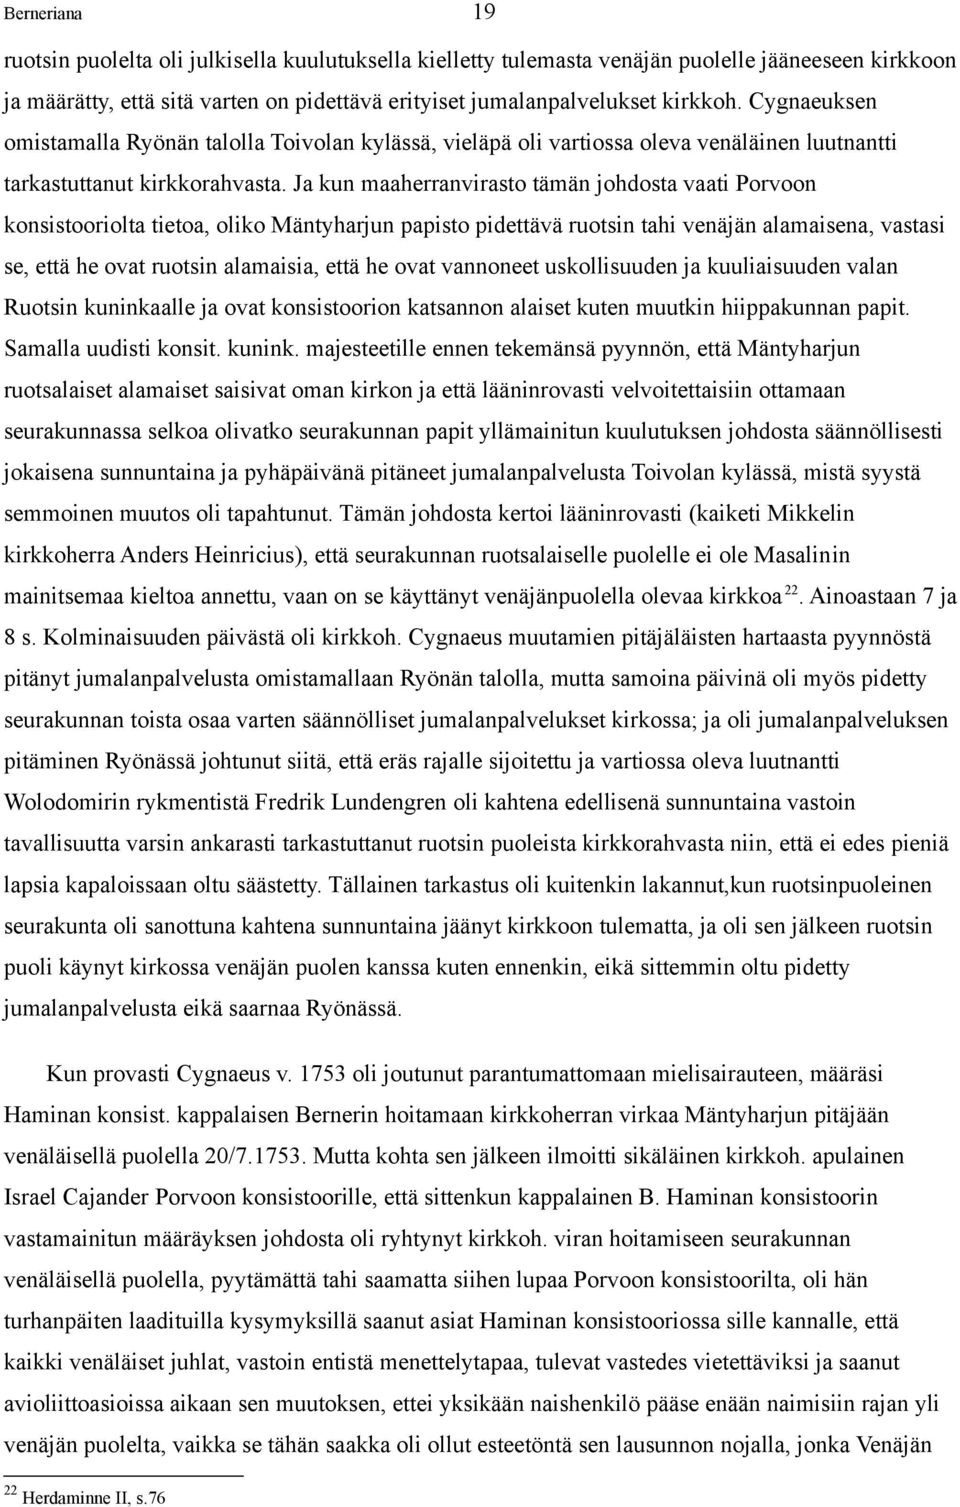 Ja kun maaherranvirasto tämän johdosta vaati Porvoon konsistooriolta tietoa, oliko Mäntyharjun papisto pidettävä ruotsin tahi venäjän alamaisena, vastasi se, että he ovat ruotsin alamaisia, että he